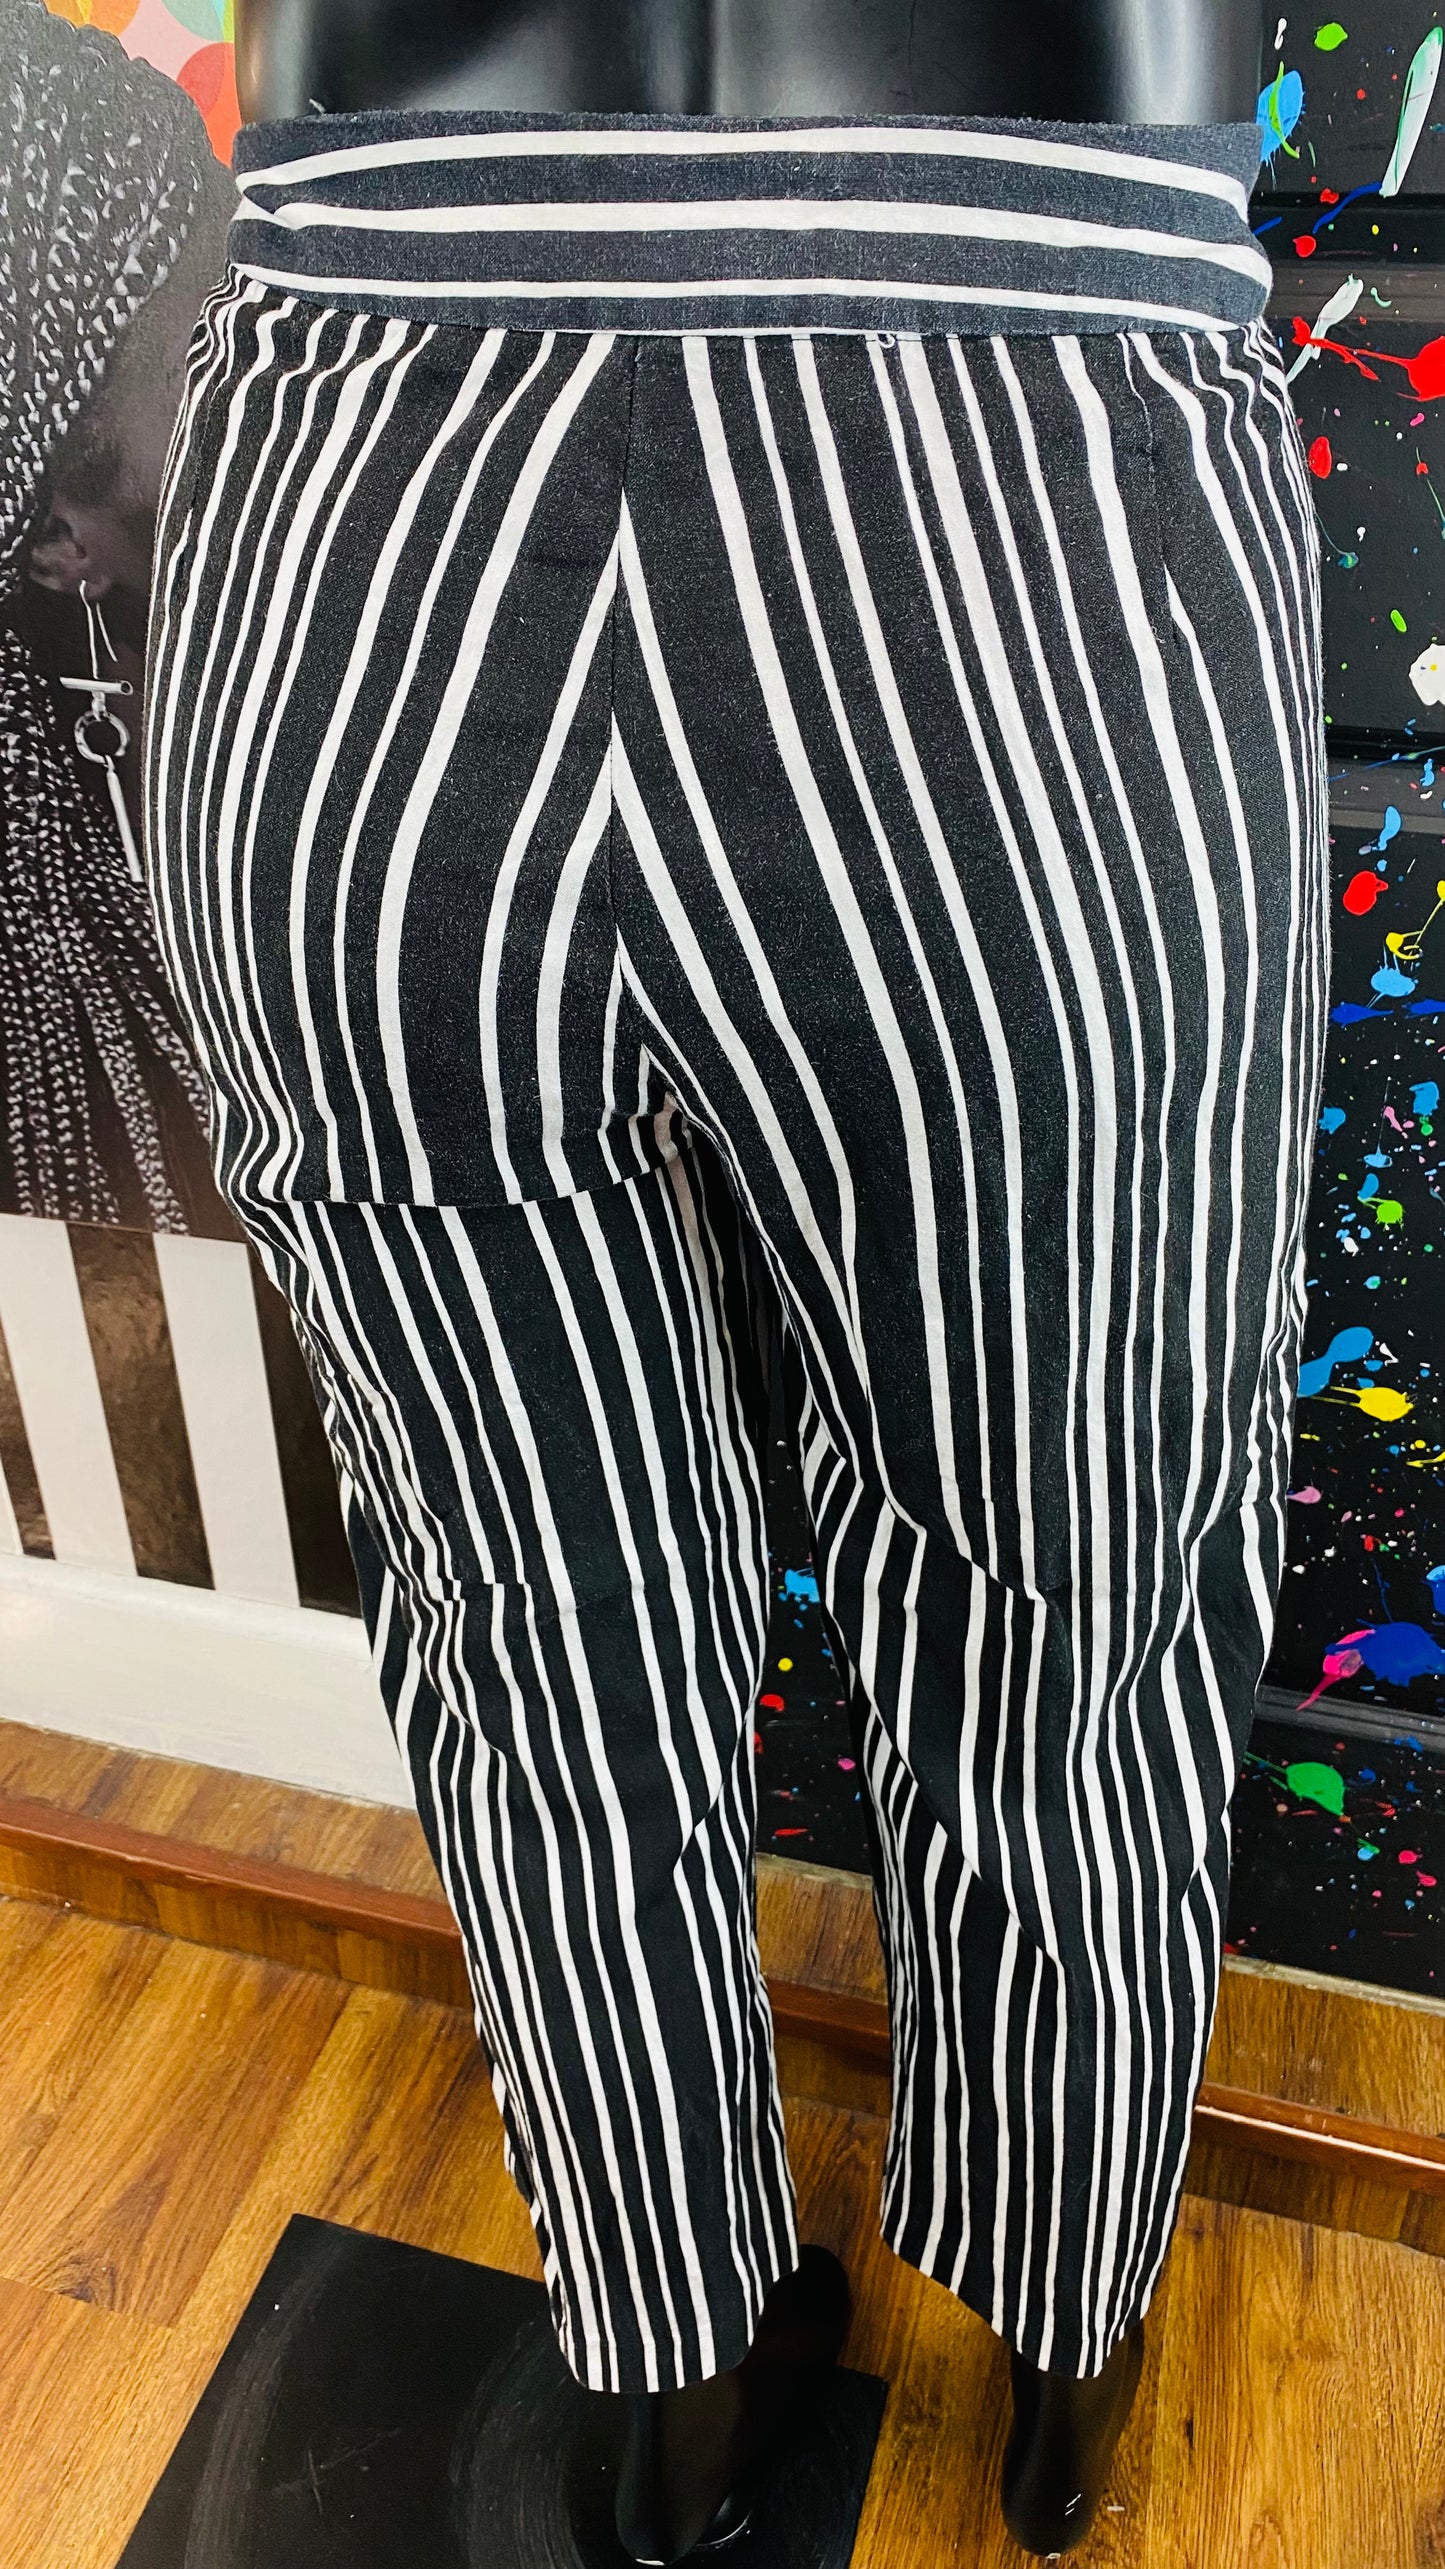 Appraisal B&W Striped Capri Pants